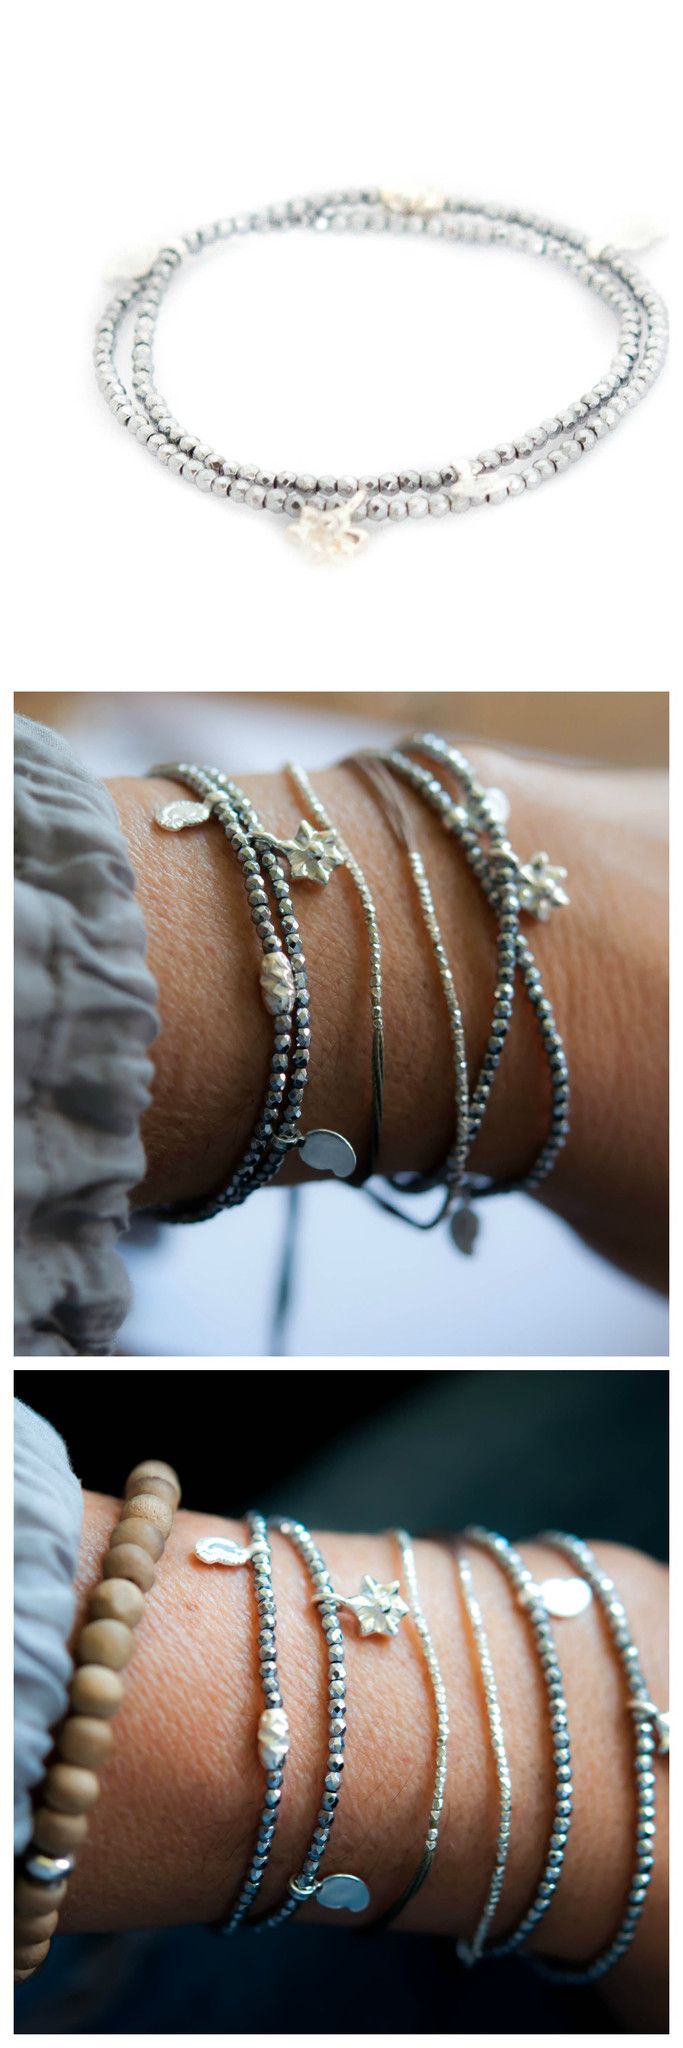 Silver Hematite double wrap bracelet by Vivien Frank 25% off the entire website ...